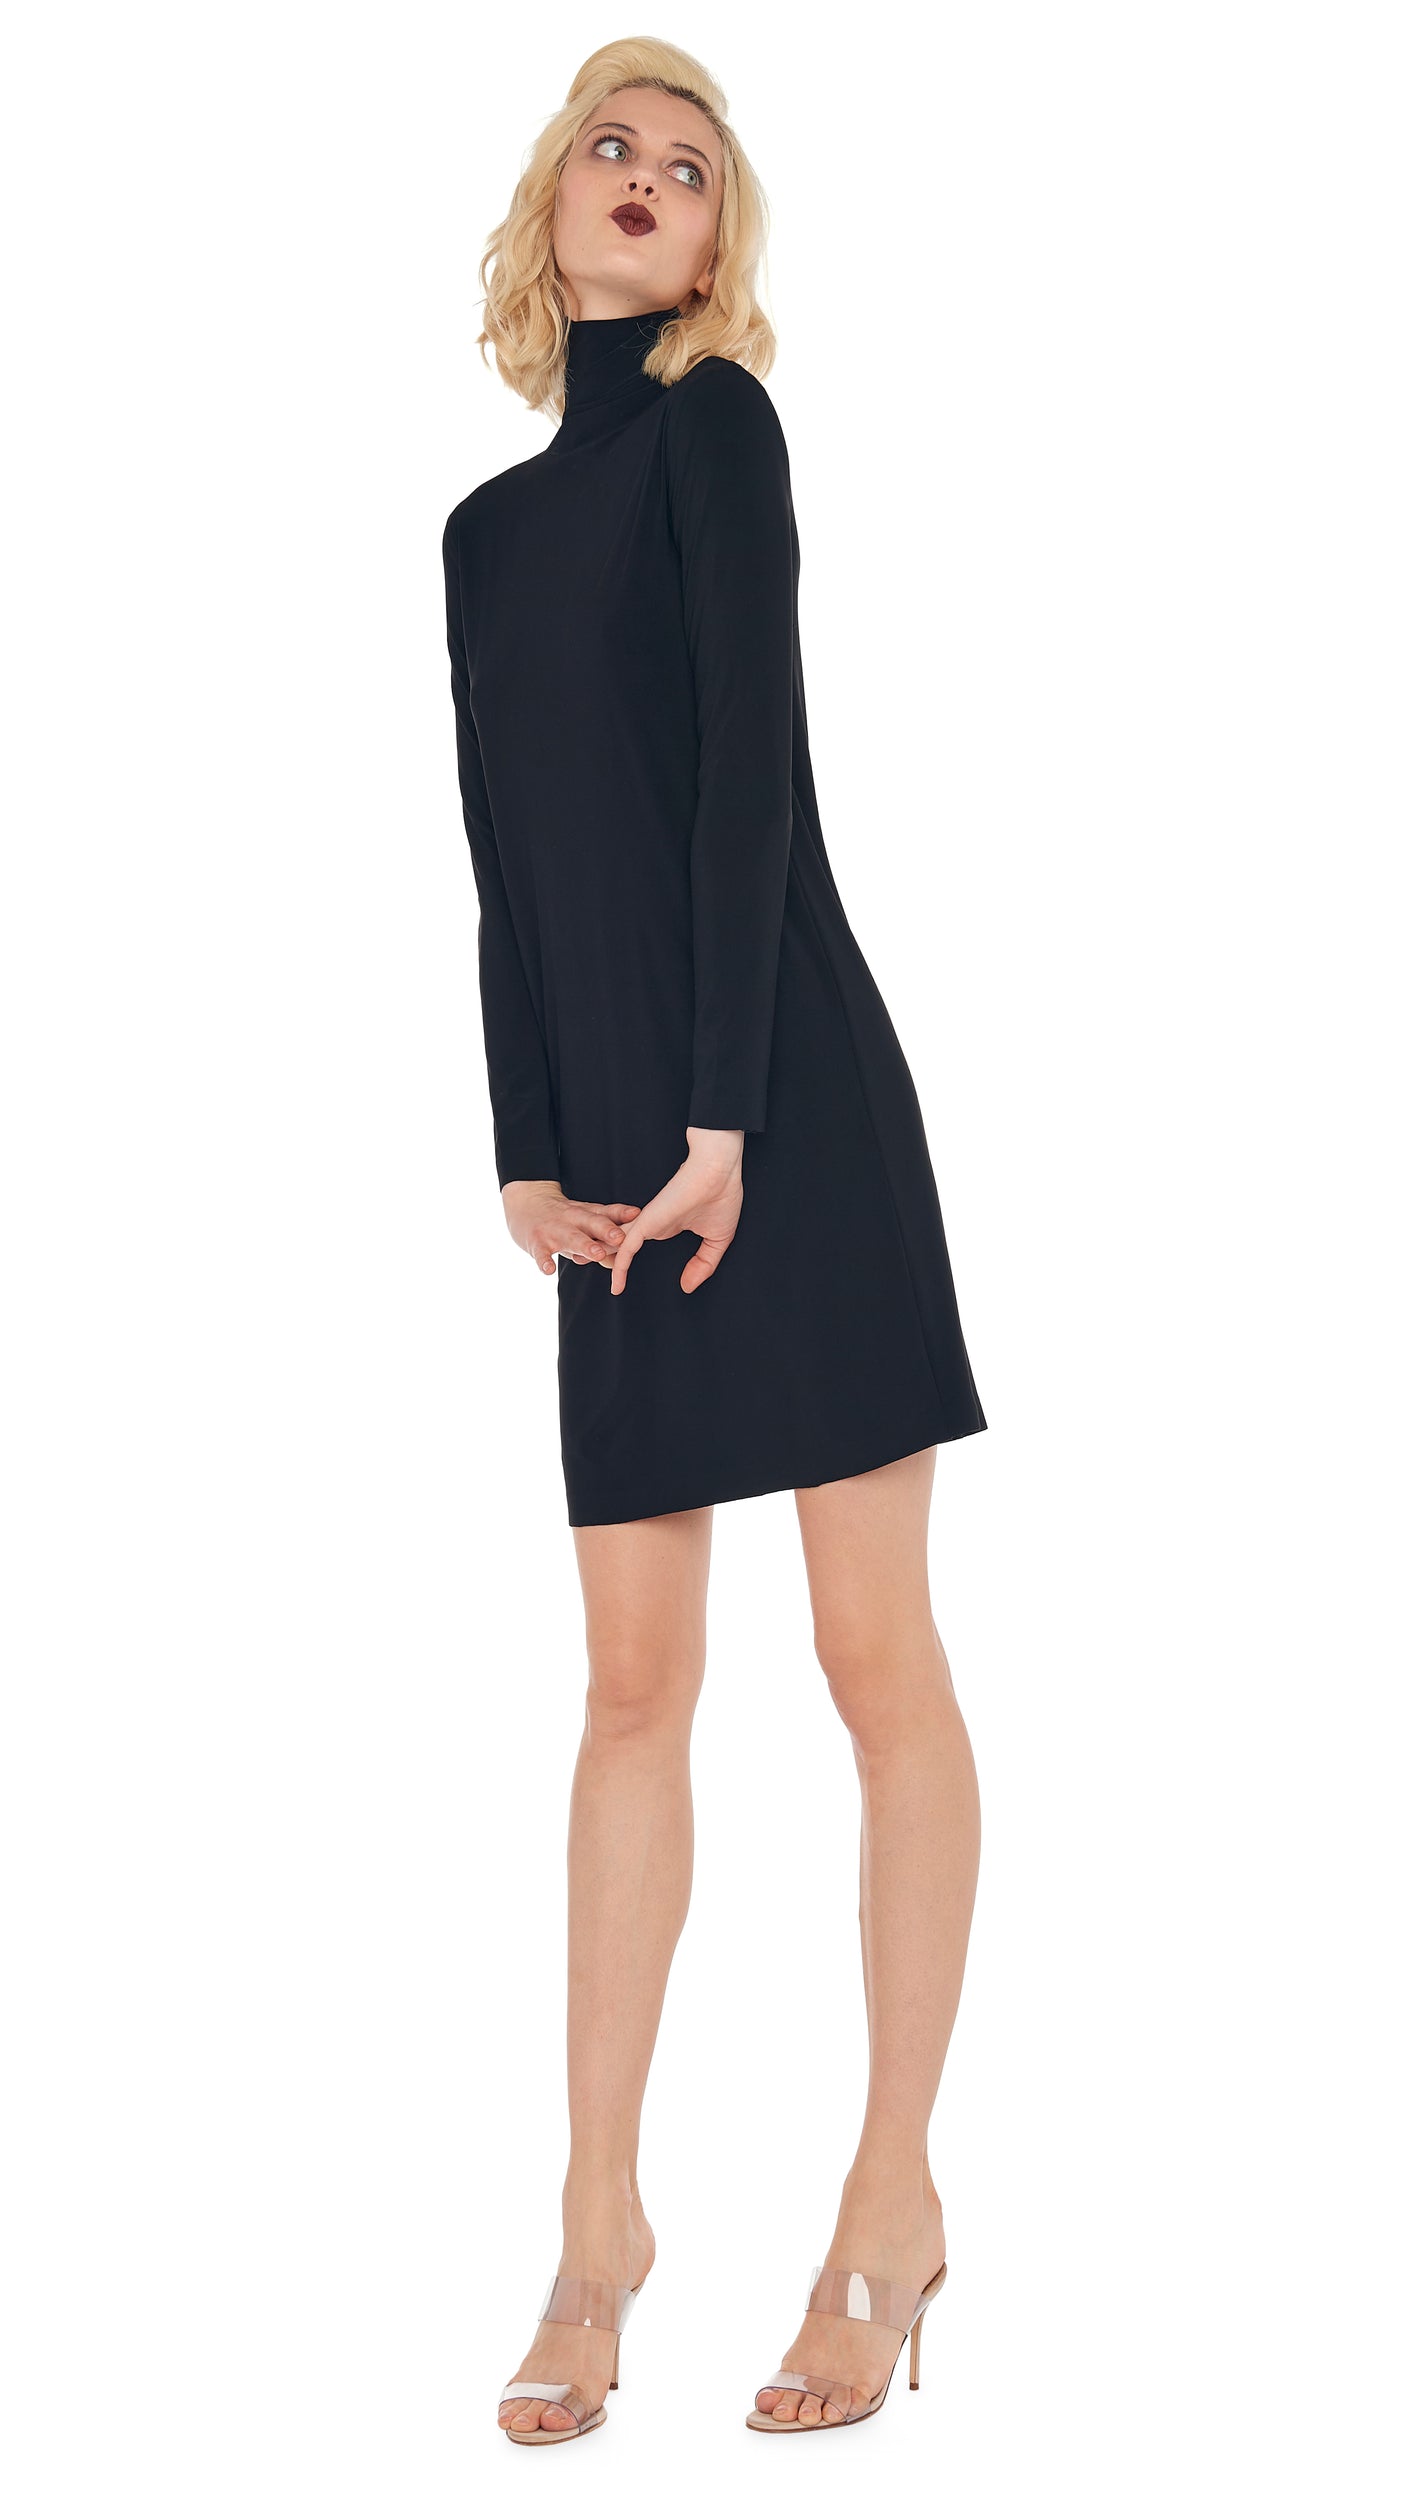 Winter Warm Long Sleeve Turtleneck Knit Dress Women Sweater Bodycon Pencil  Dress | eBay